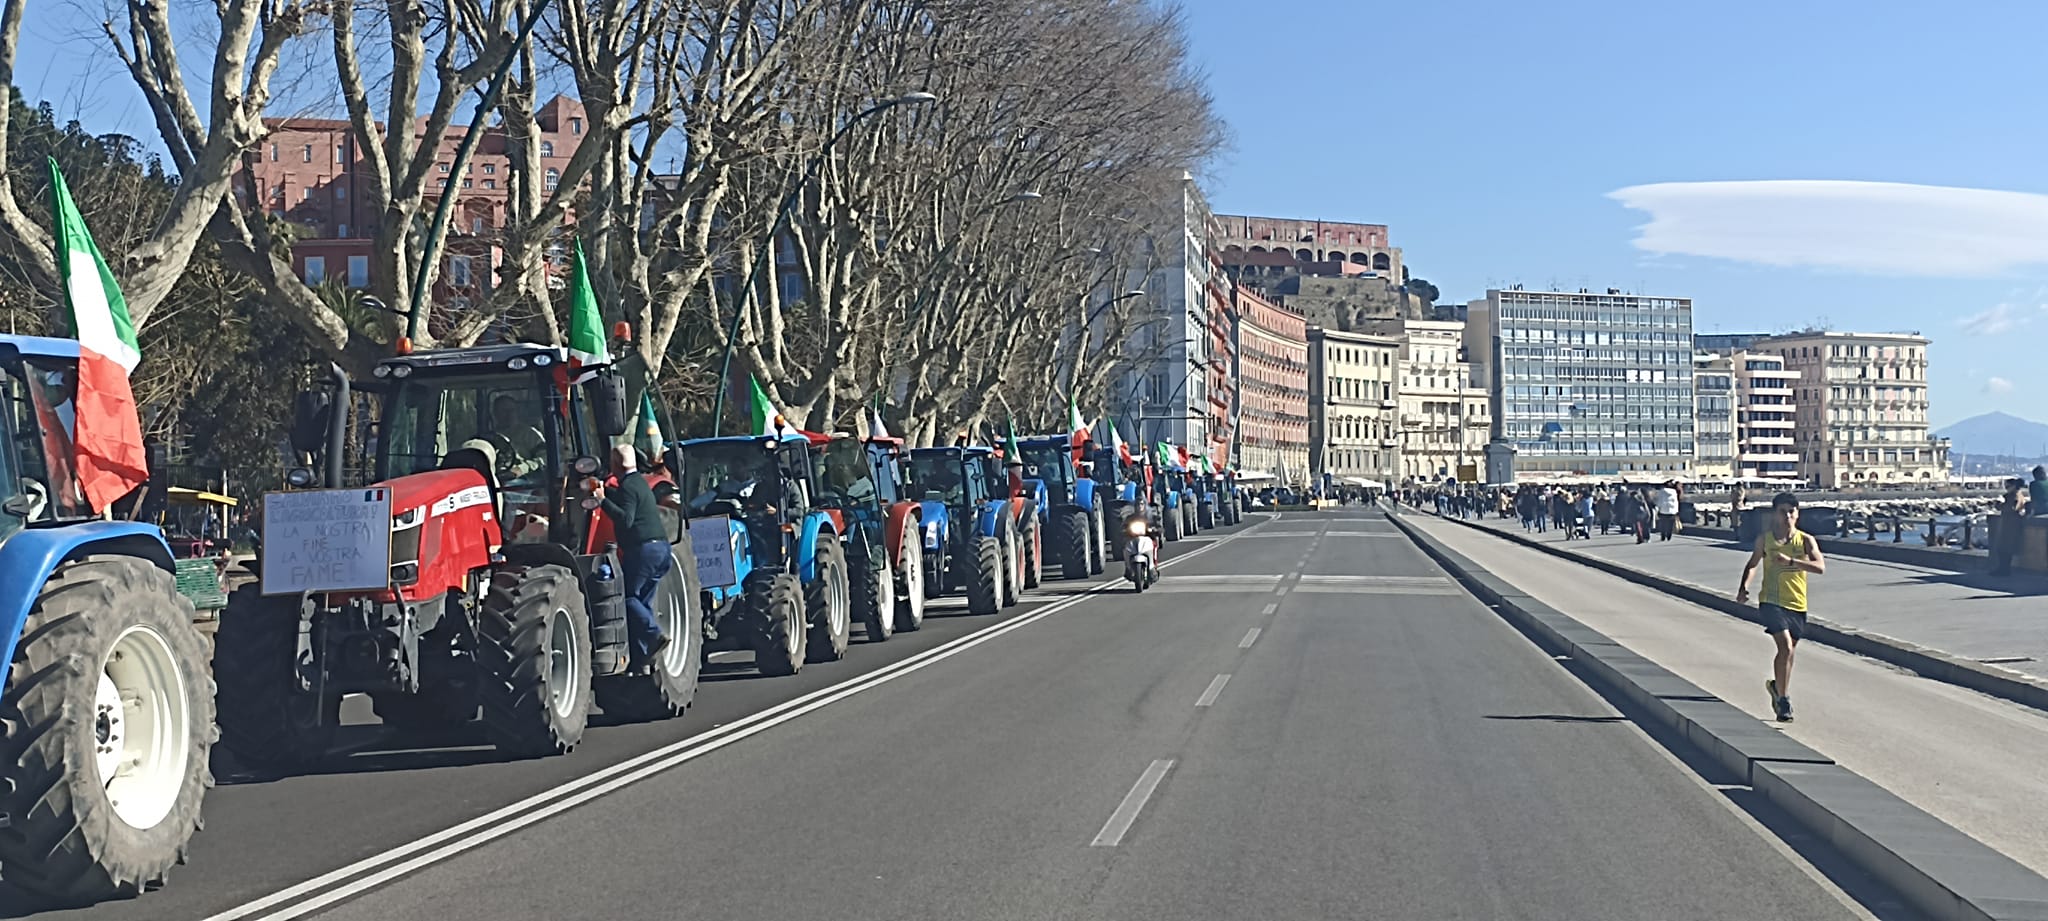 La protesta dei trattori sul lungomare di Napoli